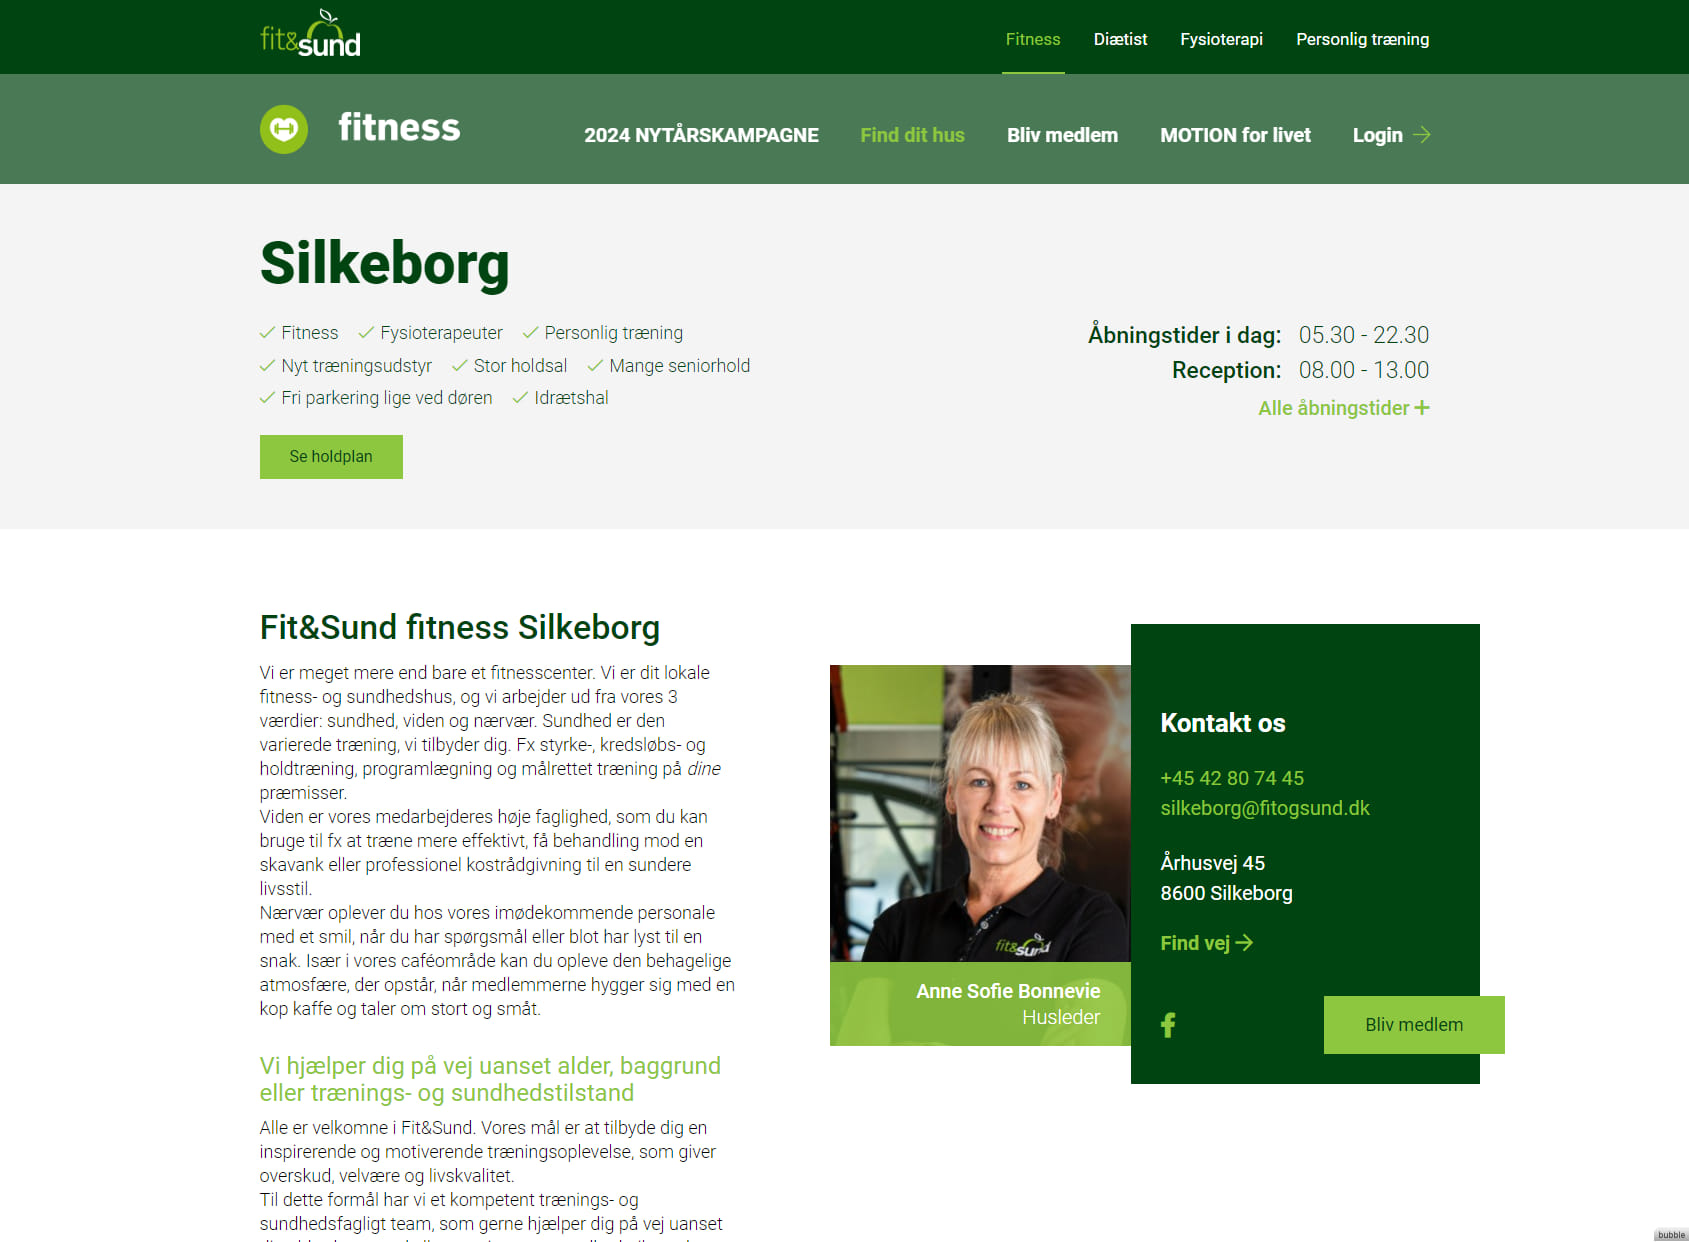 Fit&Sund Silkeborg